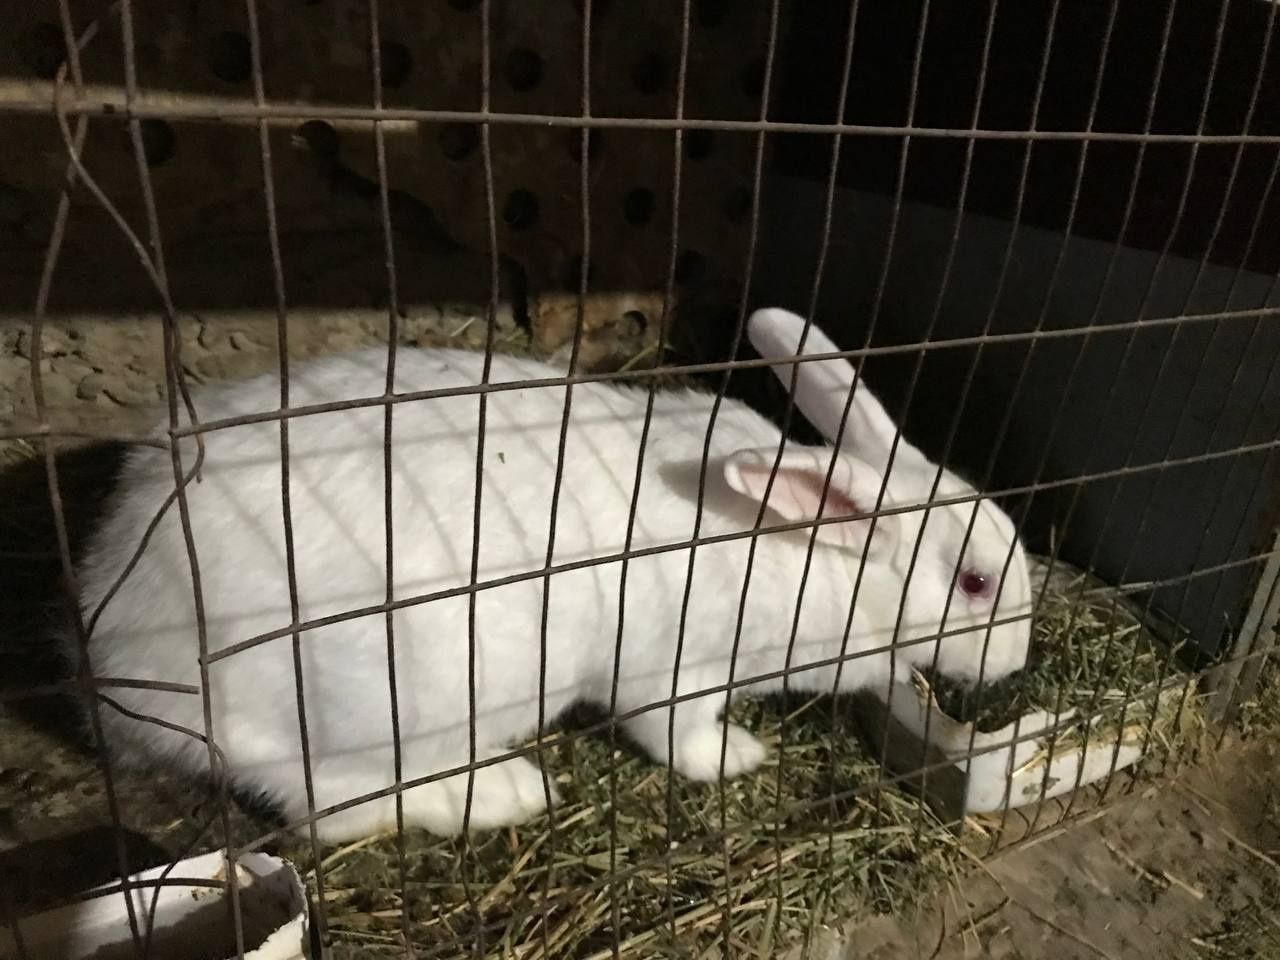 Продам кроликов!